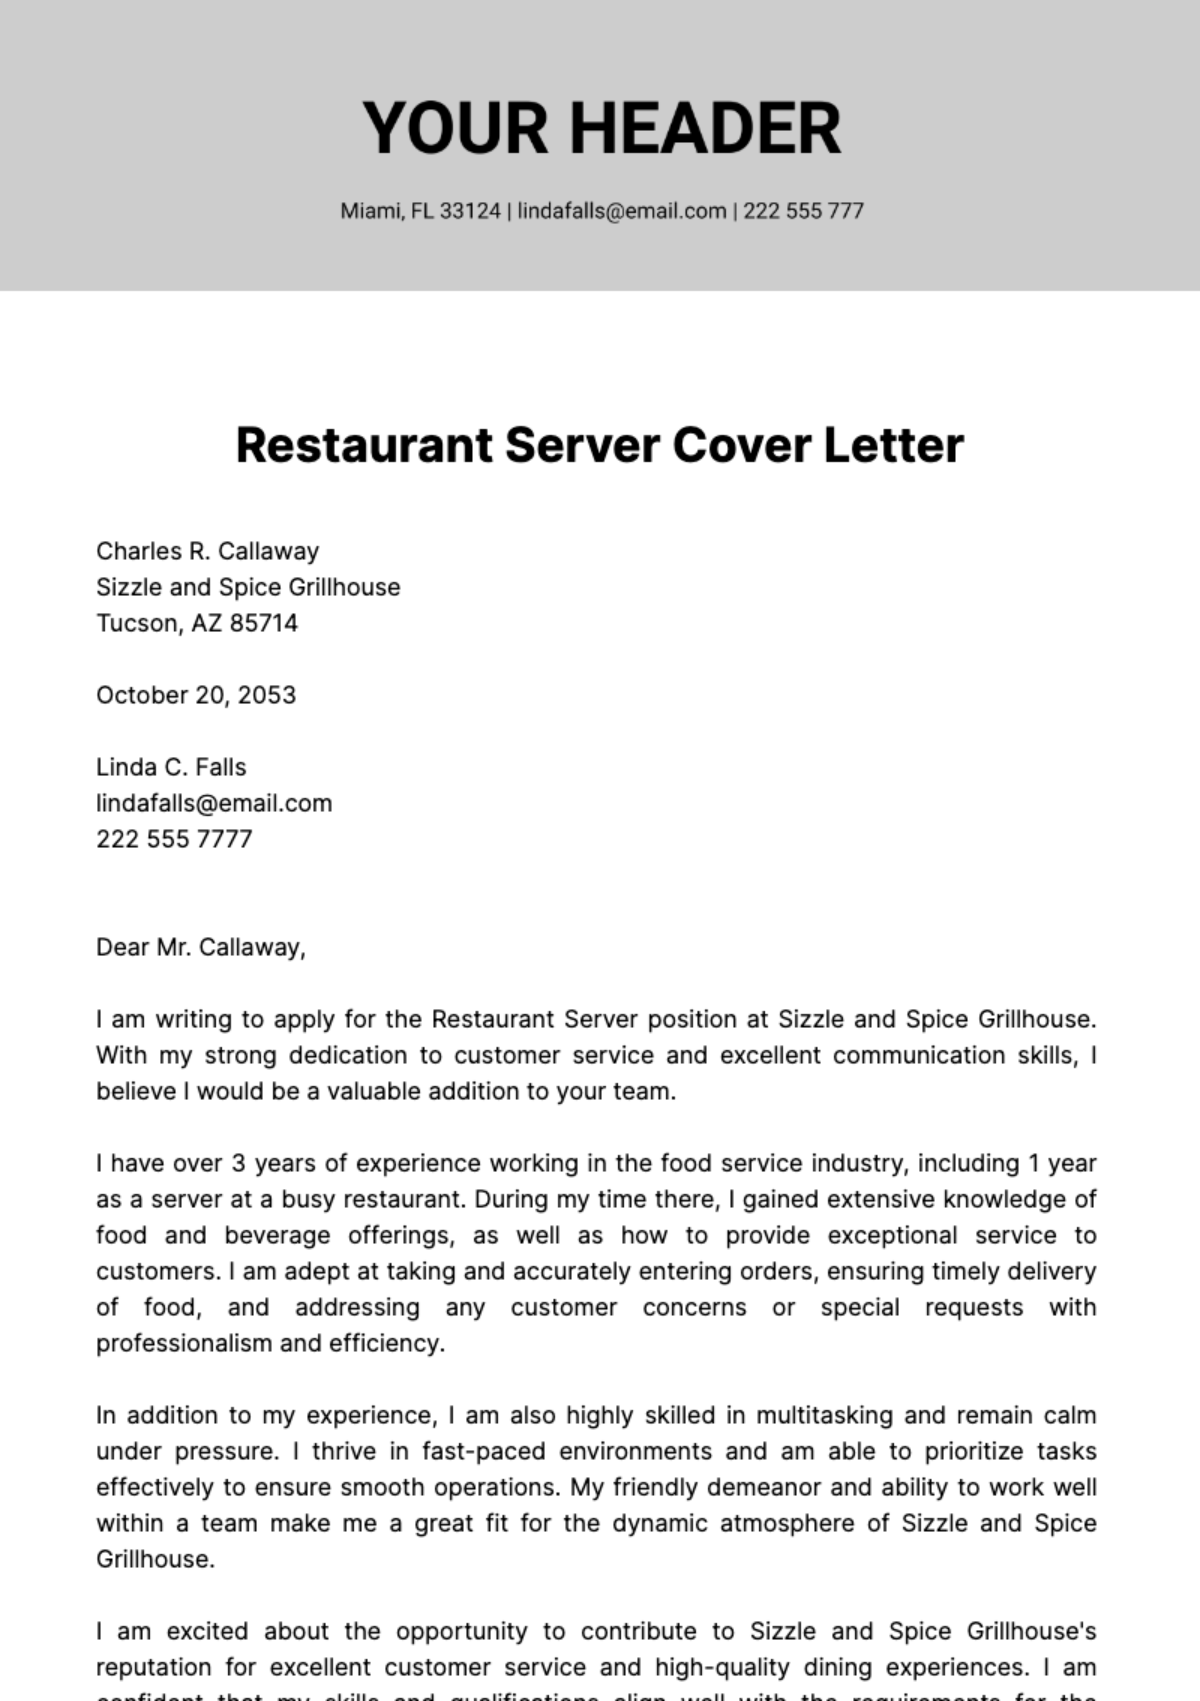 Free Restaurant Server Cover Letter  Template